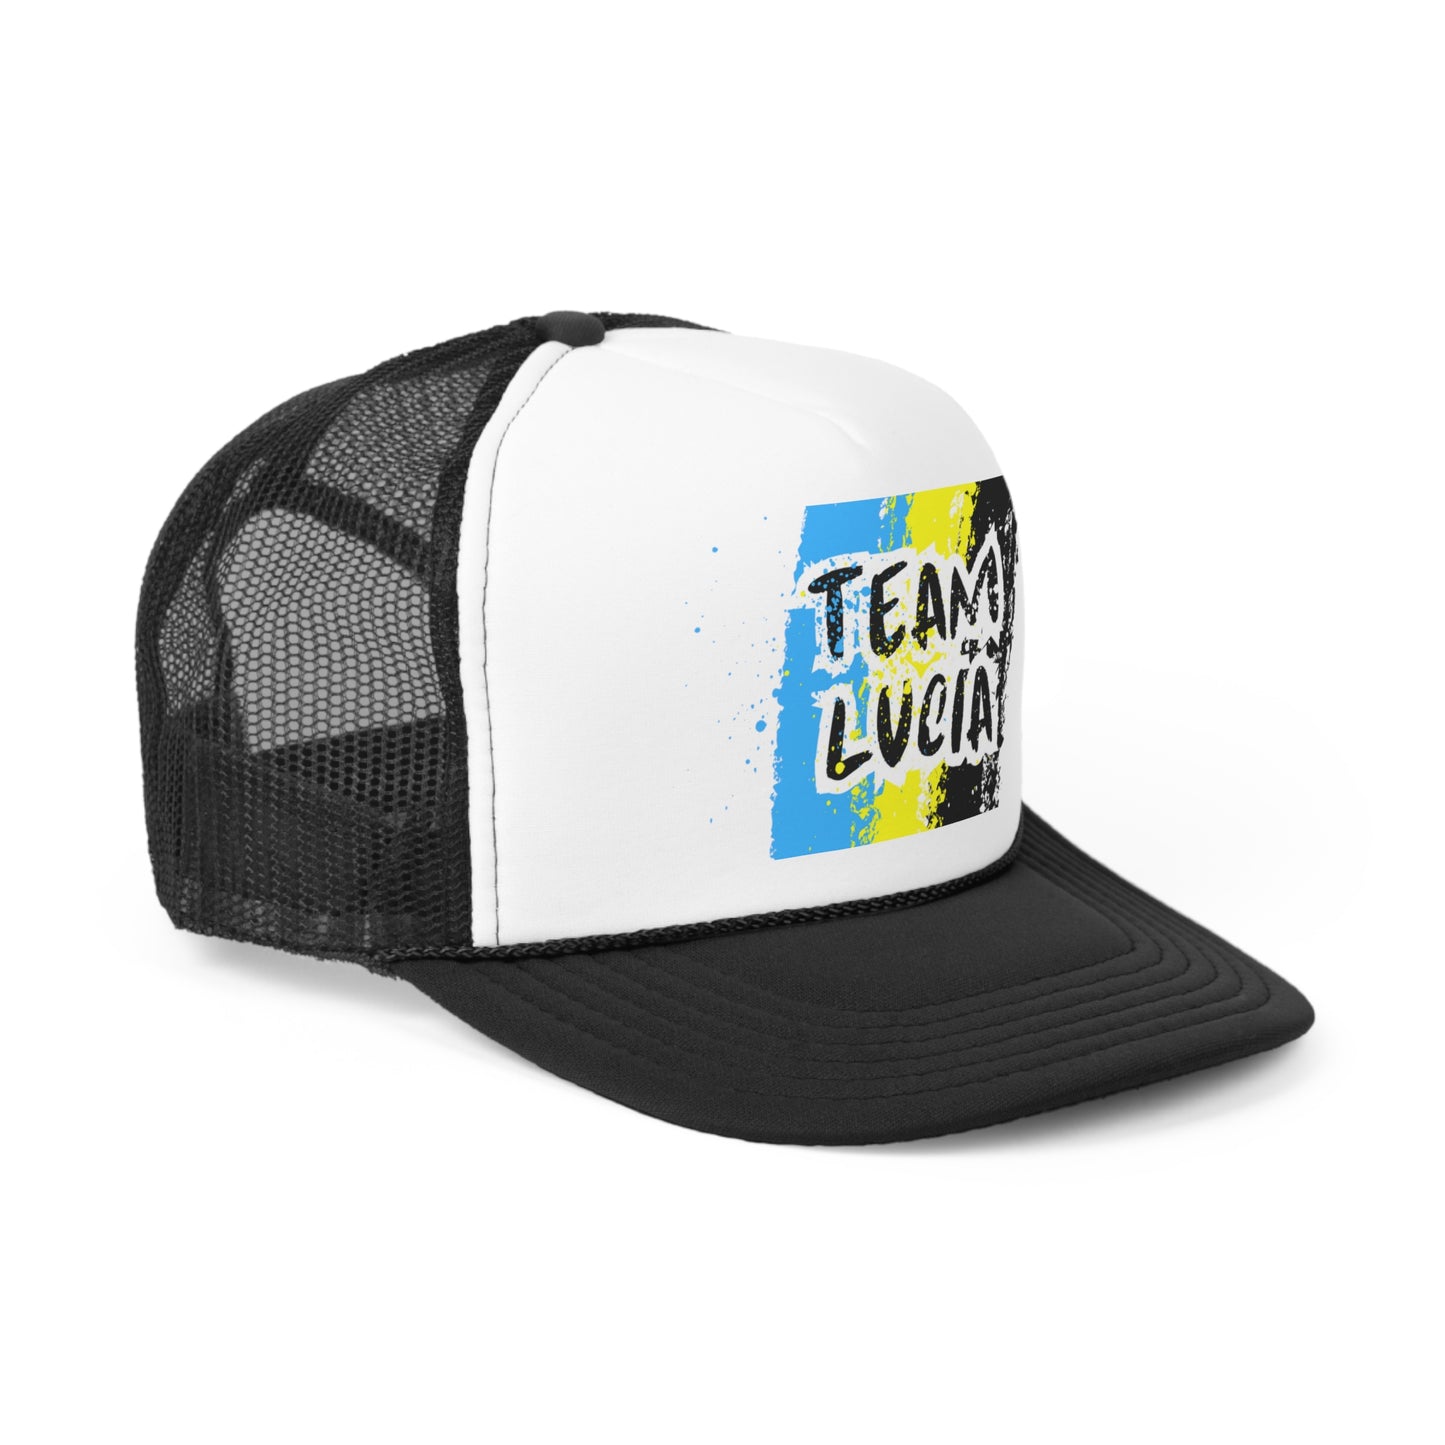 Team Lucia Trucker Caps